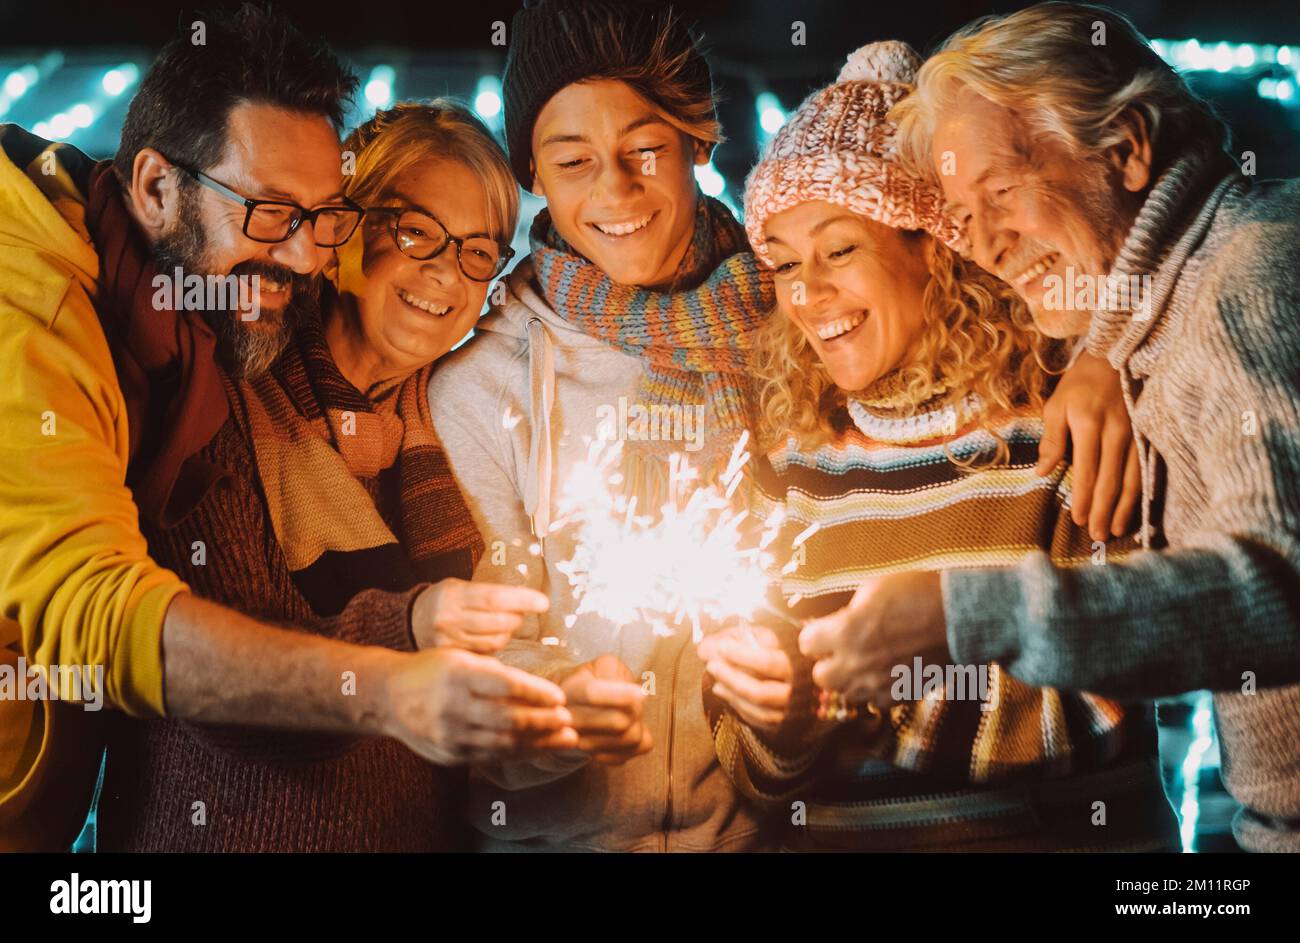 Farbenfrohes Bild einer Gruppe von Familienmitgliedern von jung bis erwachsen und reif haben Spaß in Freundschaft mit Glitzerlicht während der weihnachtszeit und am nächsten Abend. Fröhliche Leute in ihrer Freizeit Stockfoto